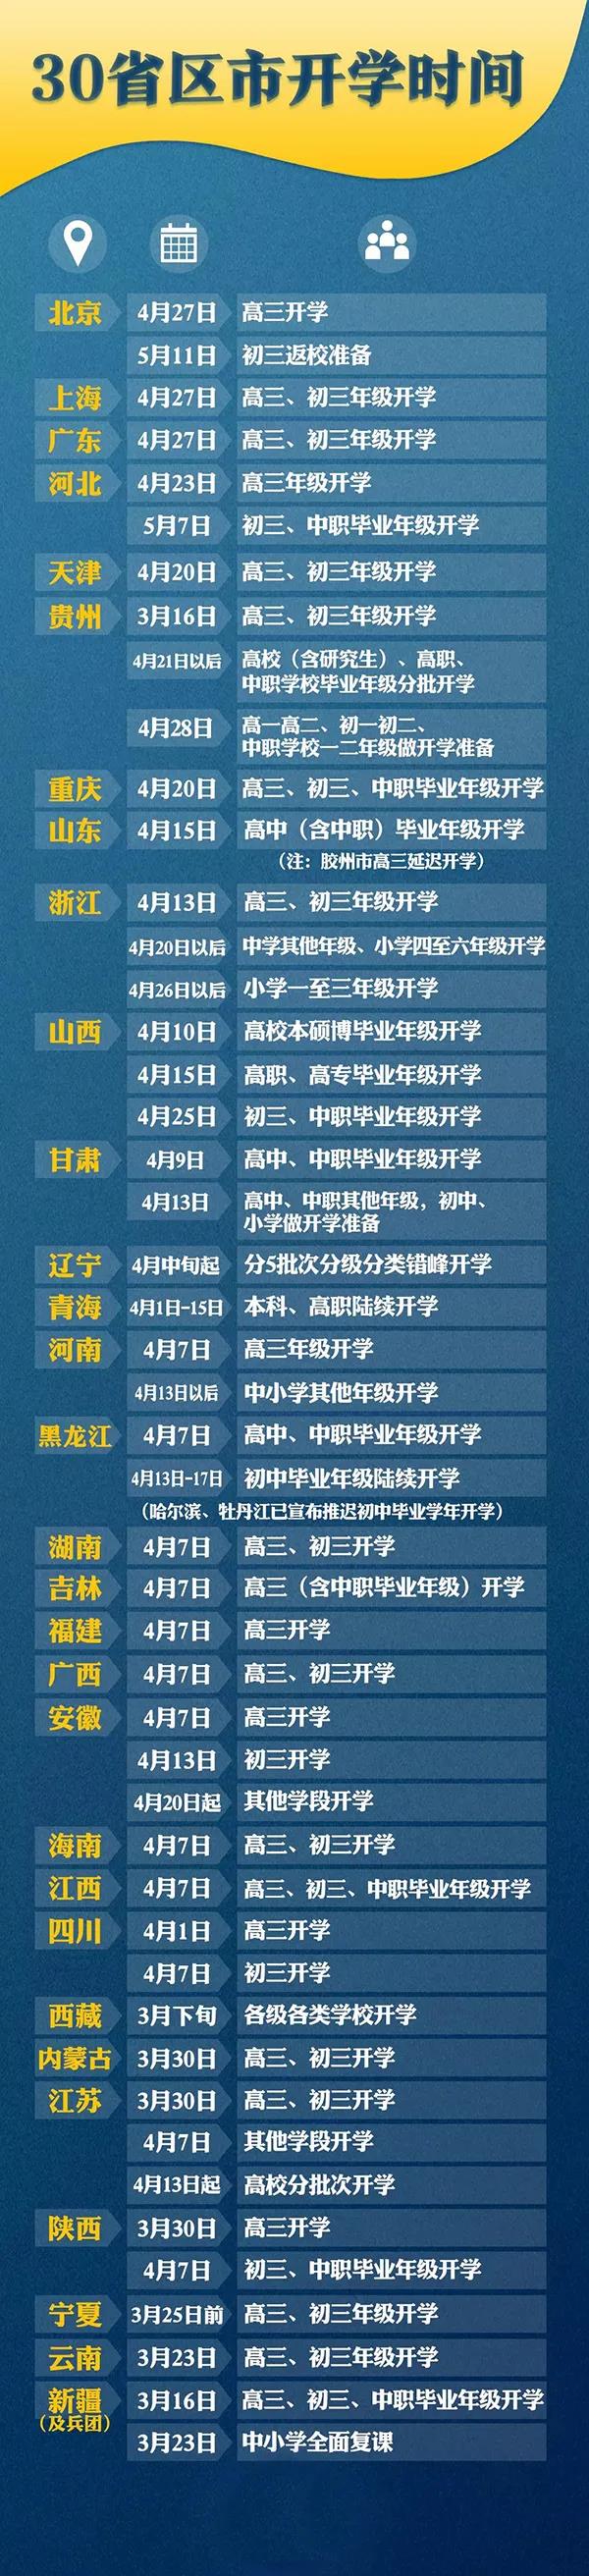 2020年开学时间表最新汇总多地明确开学时间北京上海湖北湖南开学时间